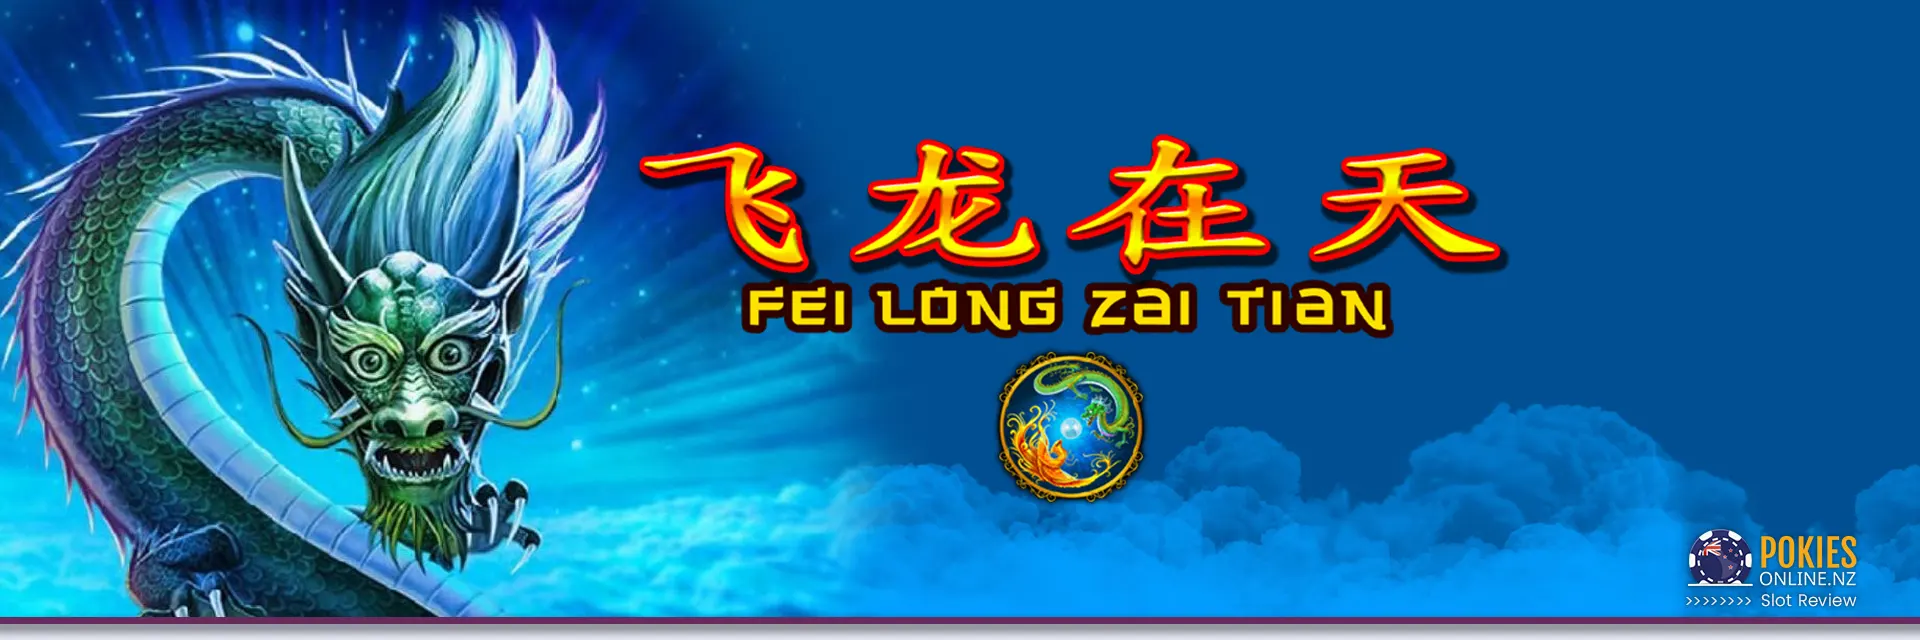 Fei Long Zai Tian slot Banner